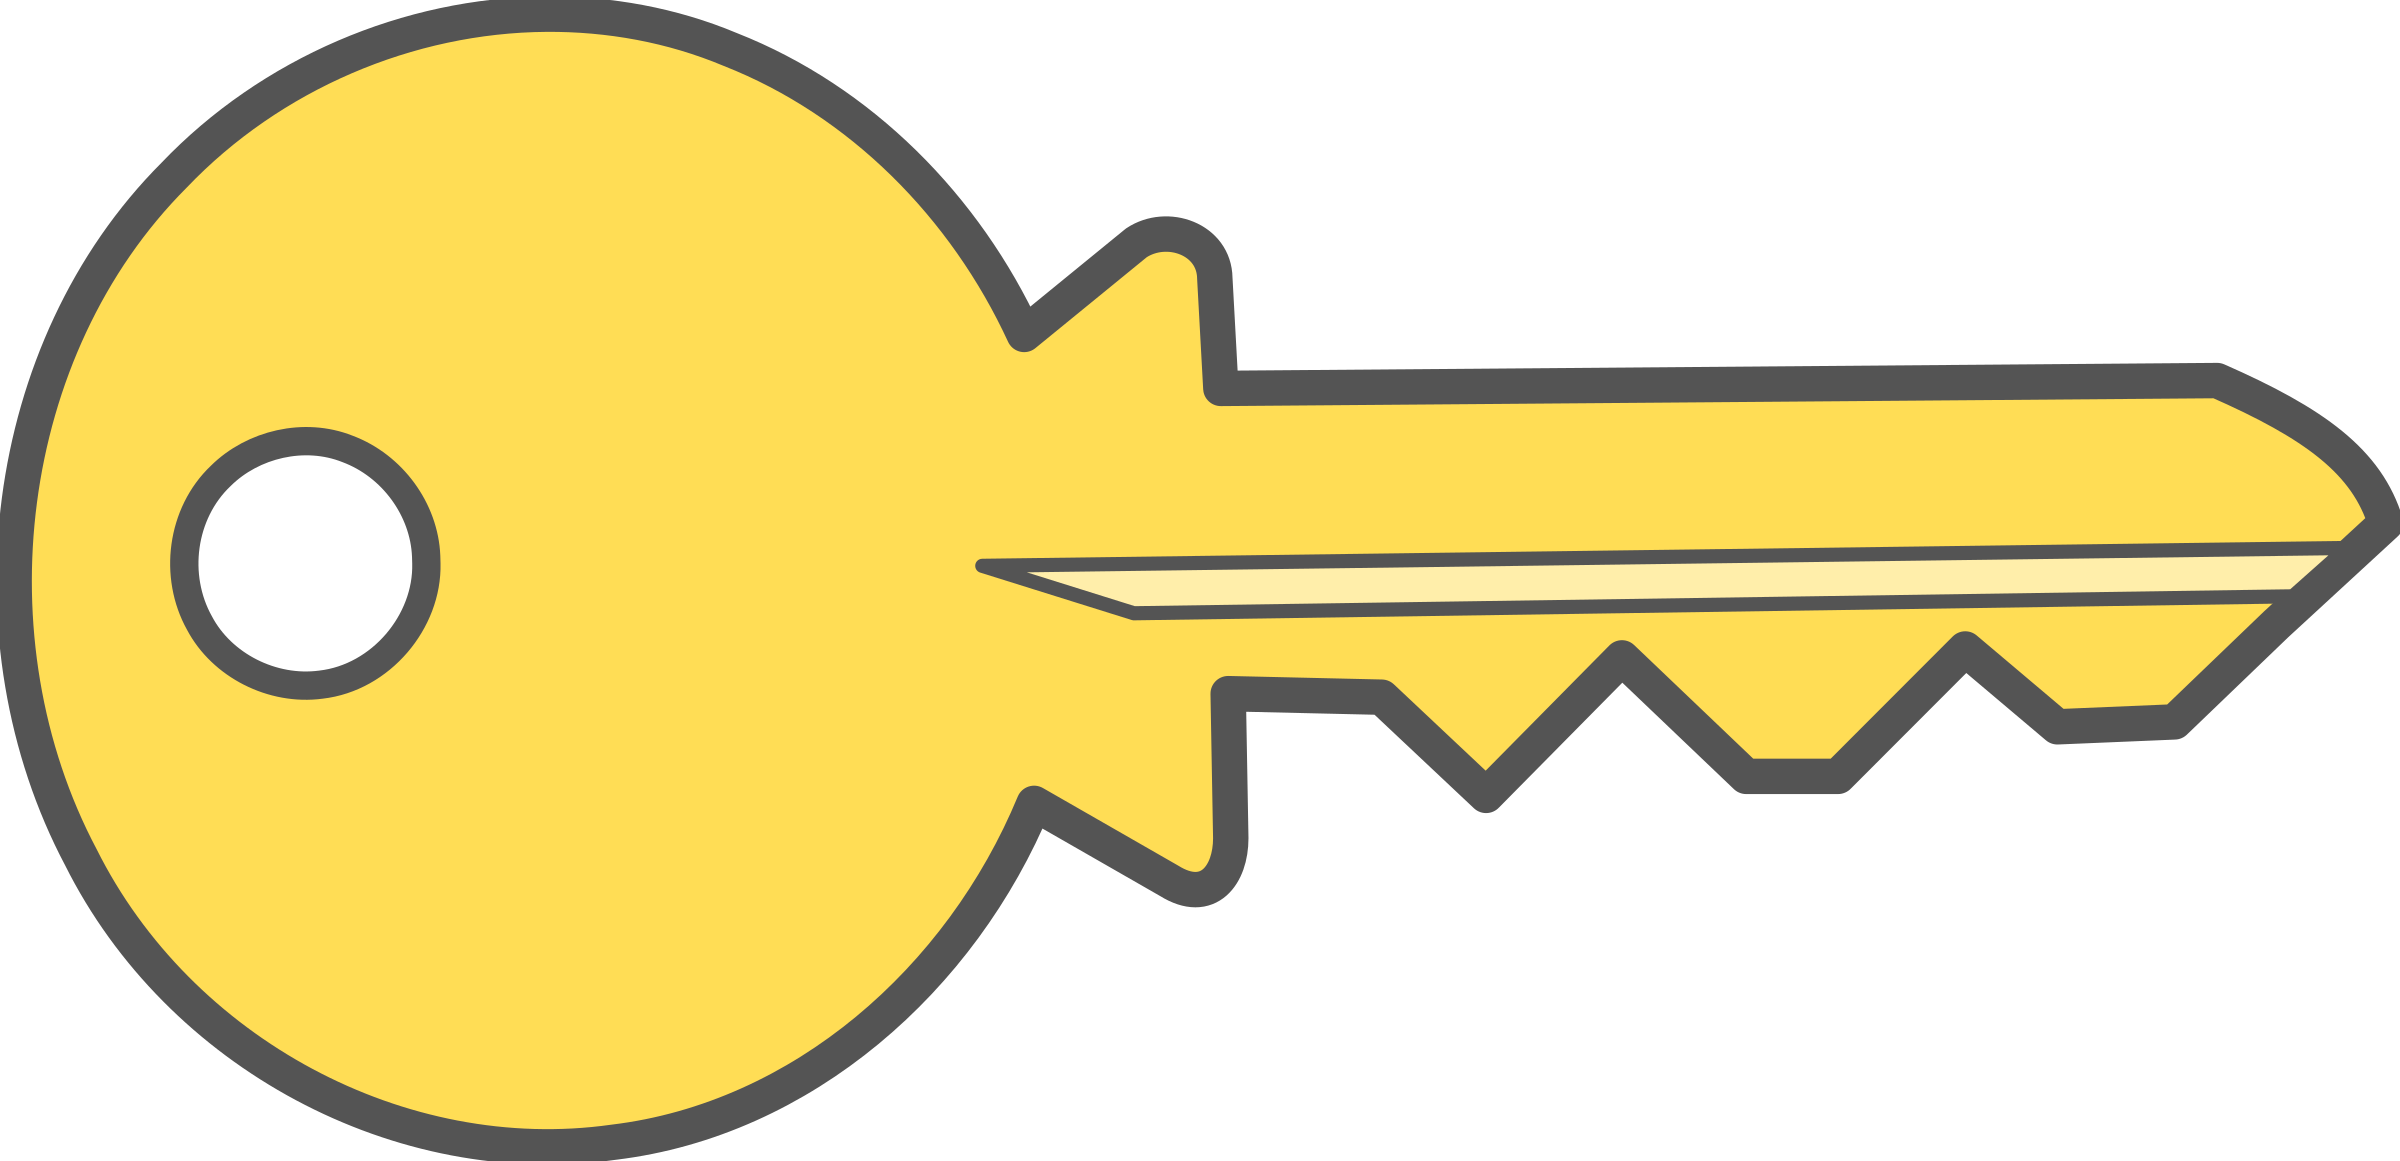 house clipart keys